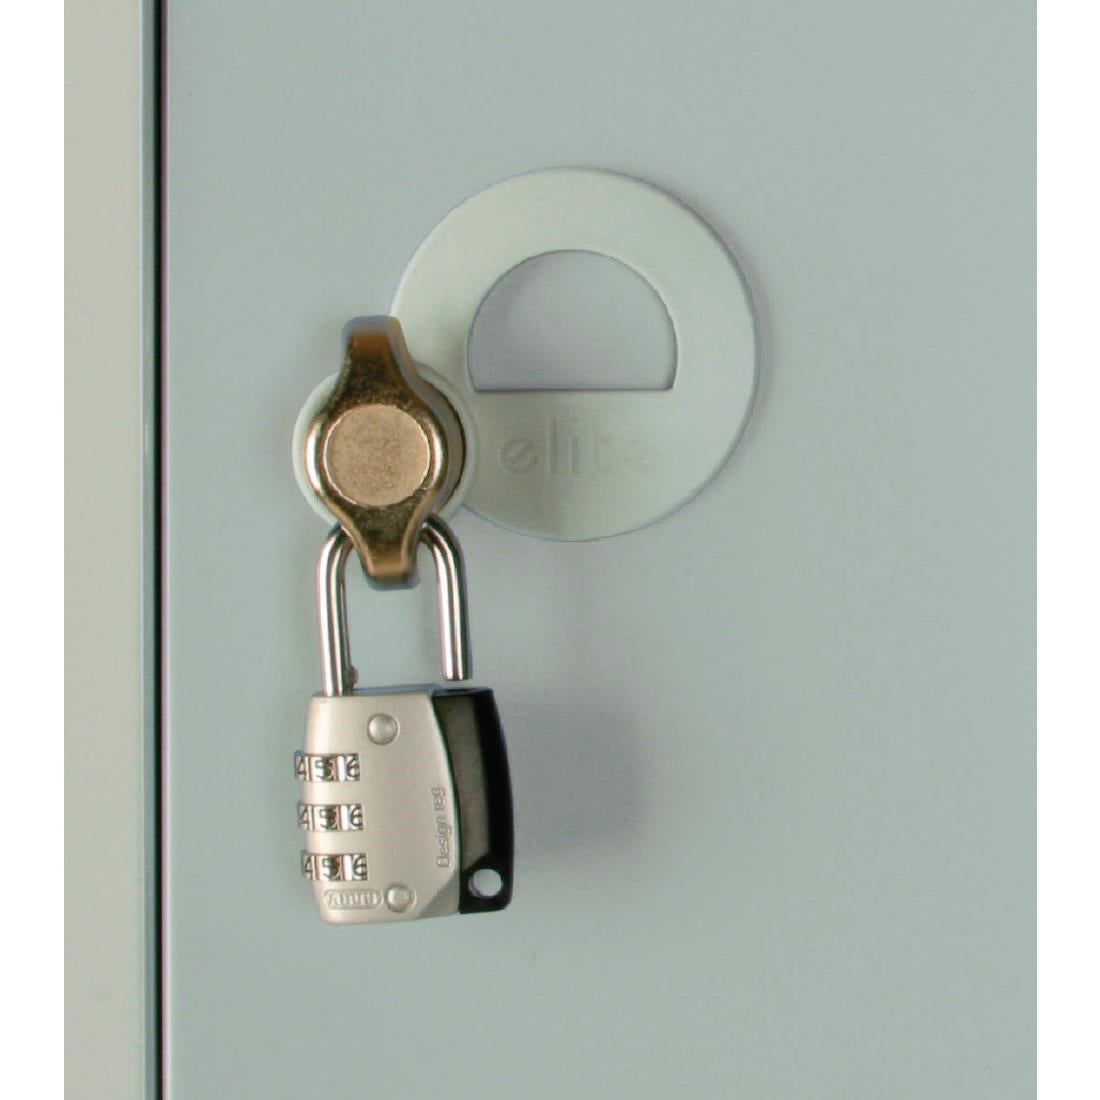 CG615-PS Elite Five Door Padlock Locker with Sloping Top Grey JD Catering Equipment Solutions Ltd